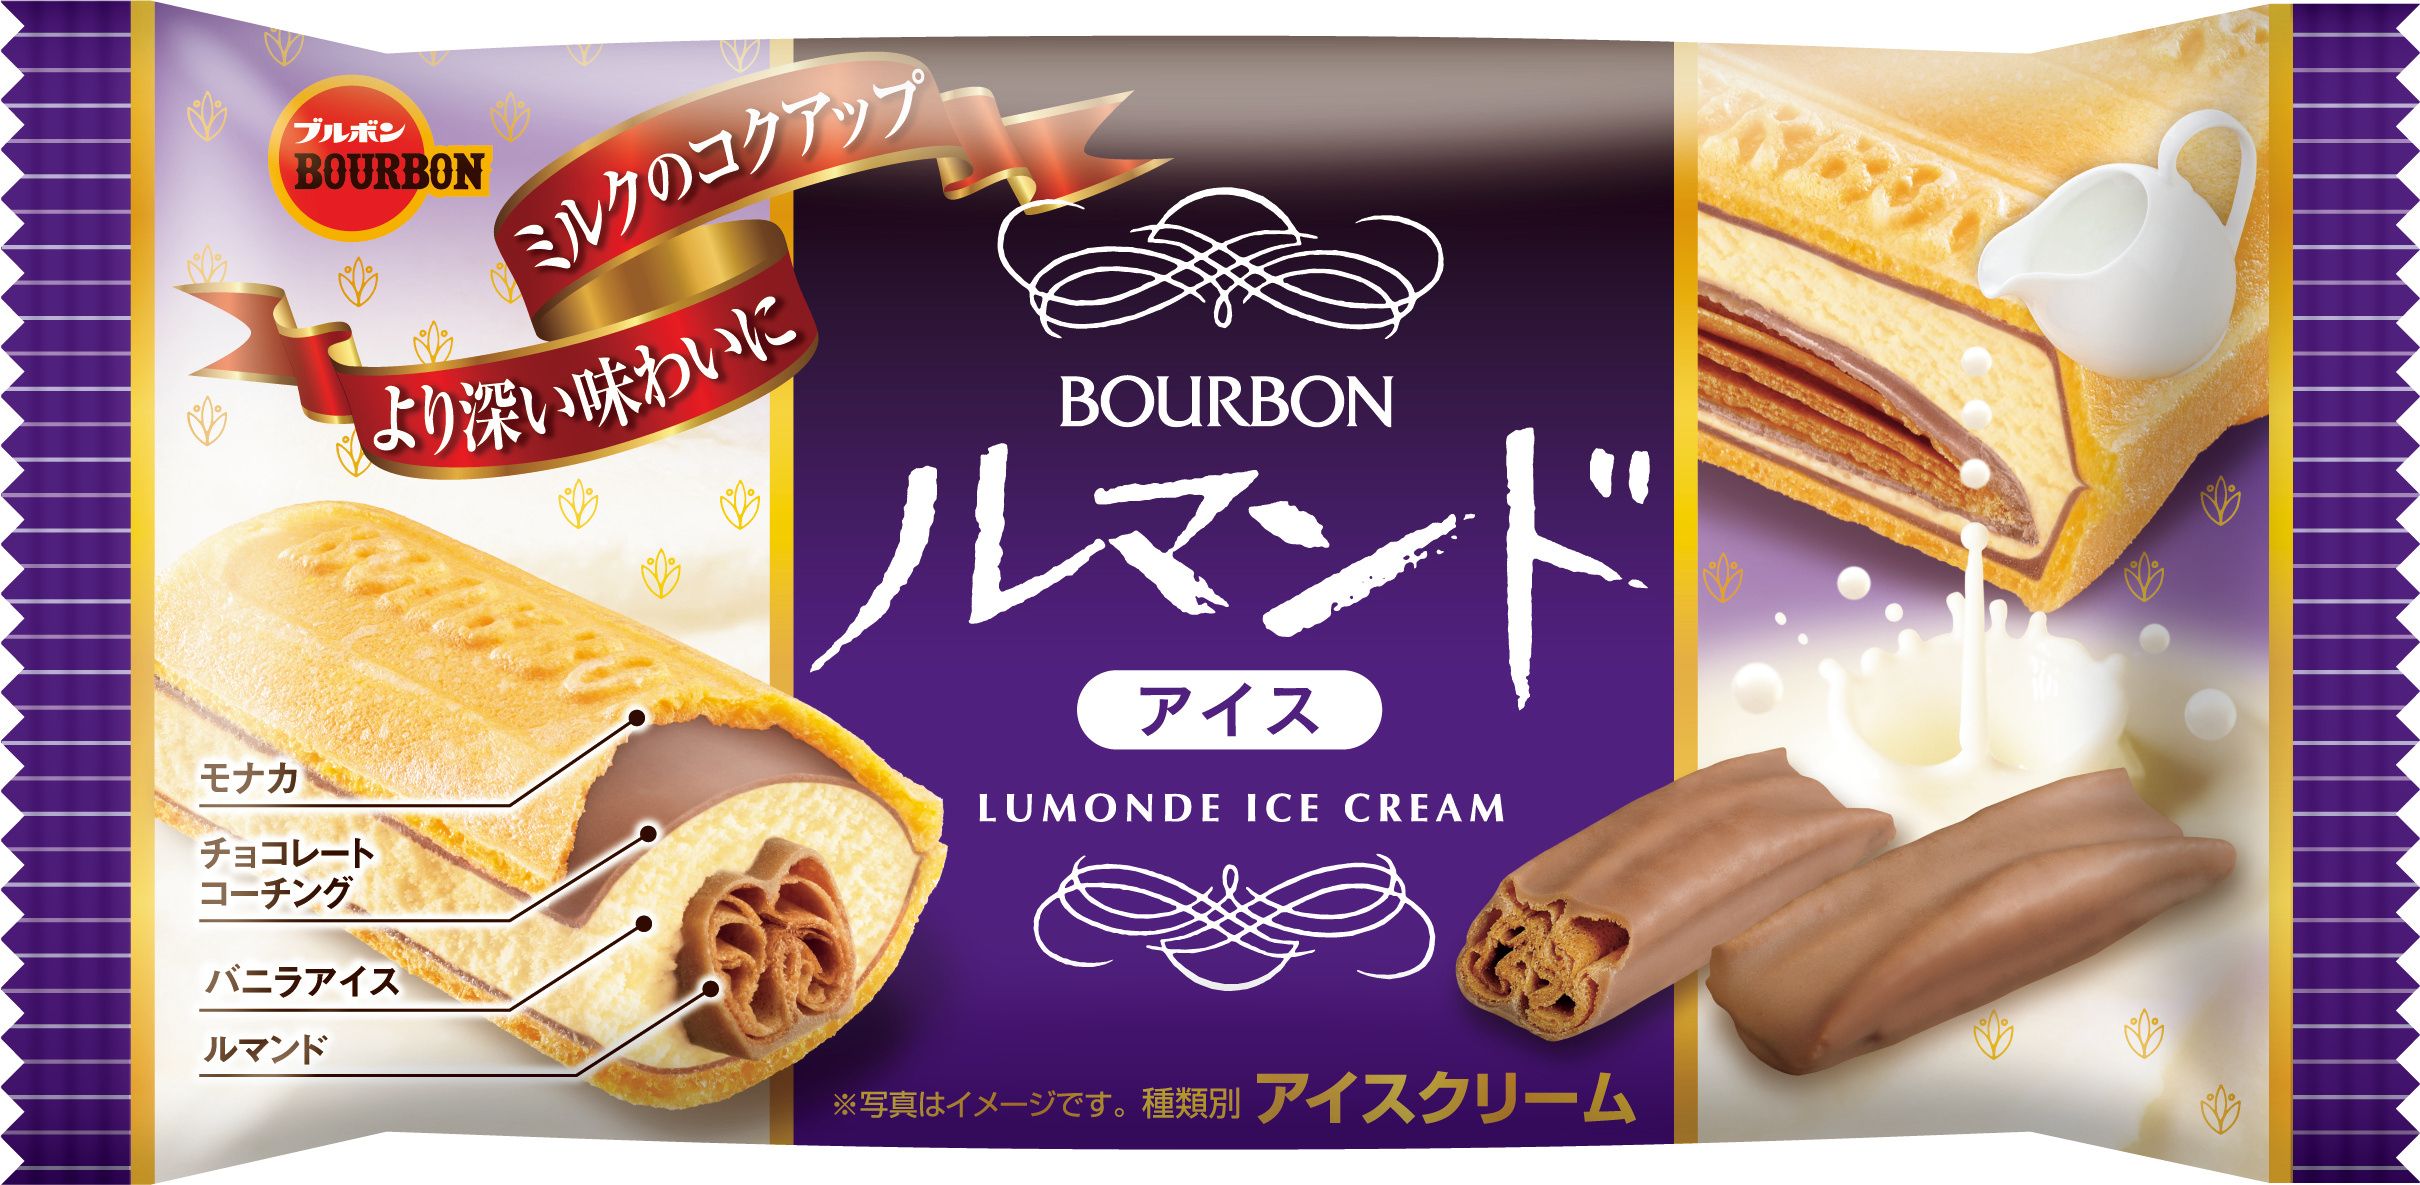 高級食パン専門店『あずき』は、季節の上品な味わいの
「KURI食パン」を2020年9月より通信販売開始！